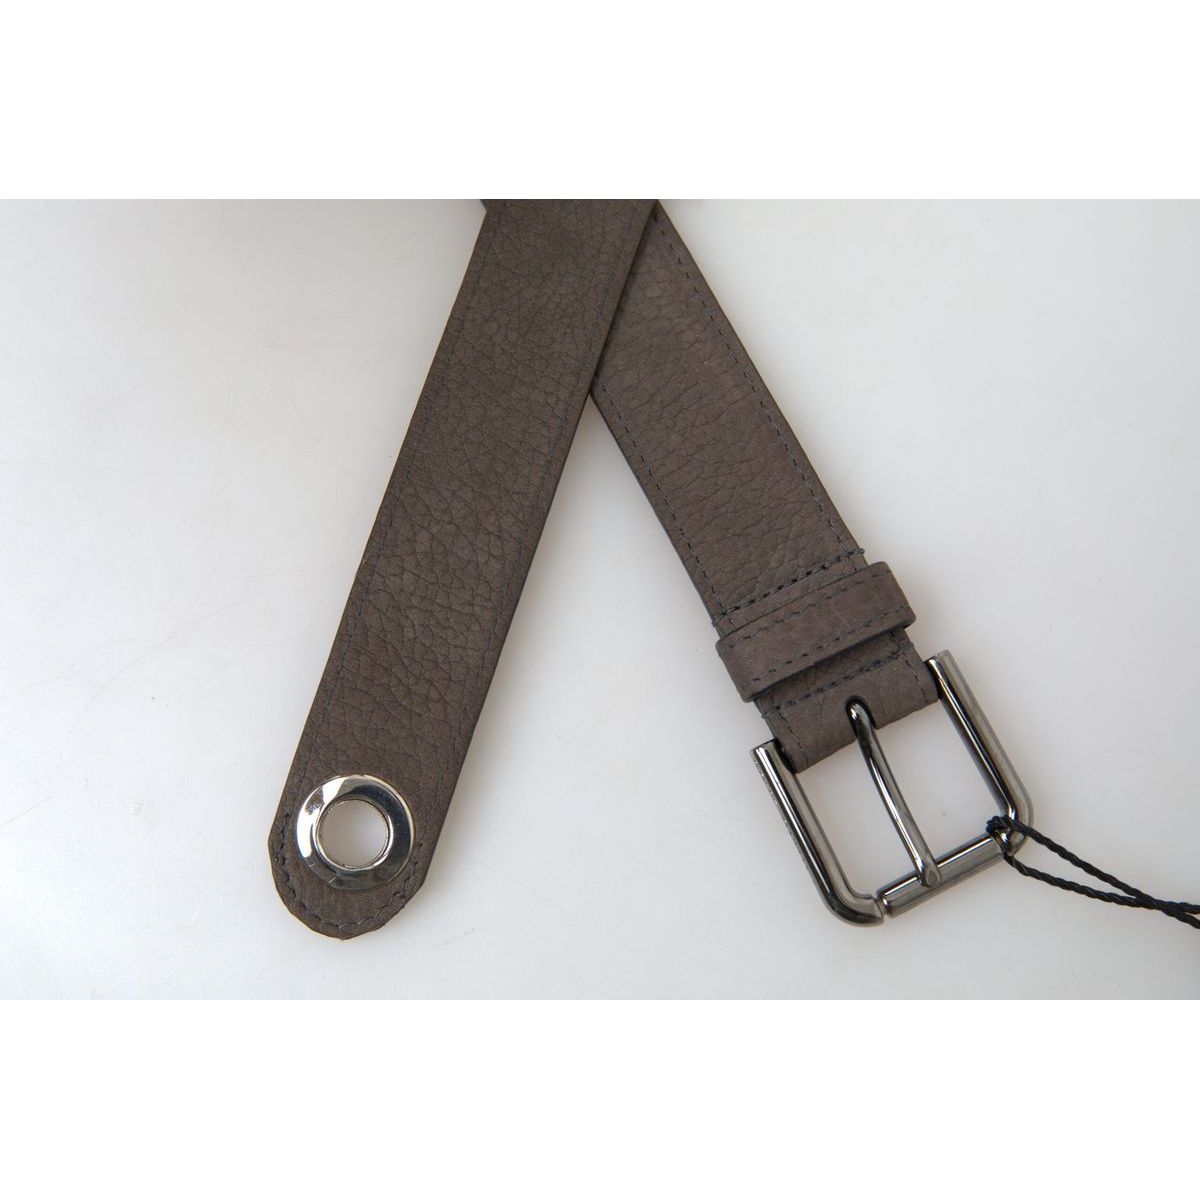 Dolce & Gabbana Elegant Brown Leather Belt with Metal Buckle brown-leather-metal-buckle-men-cintura-belt